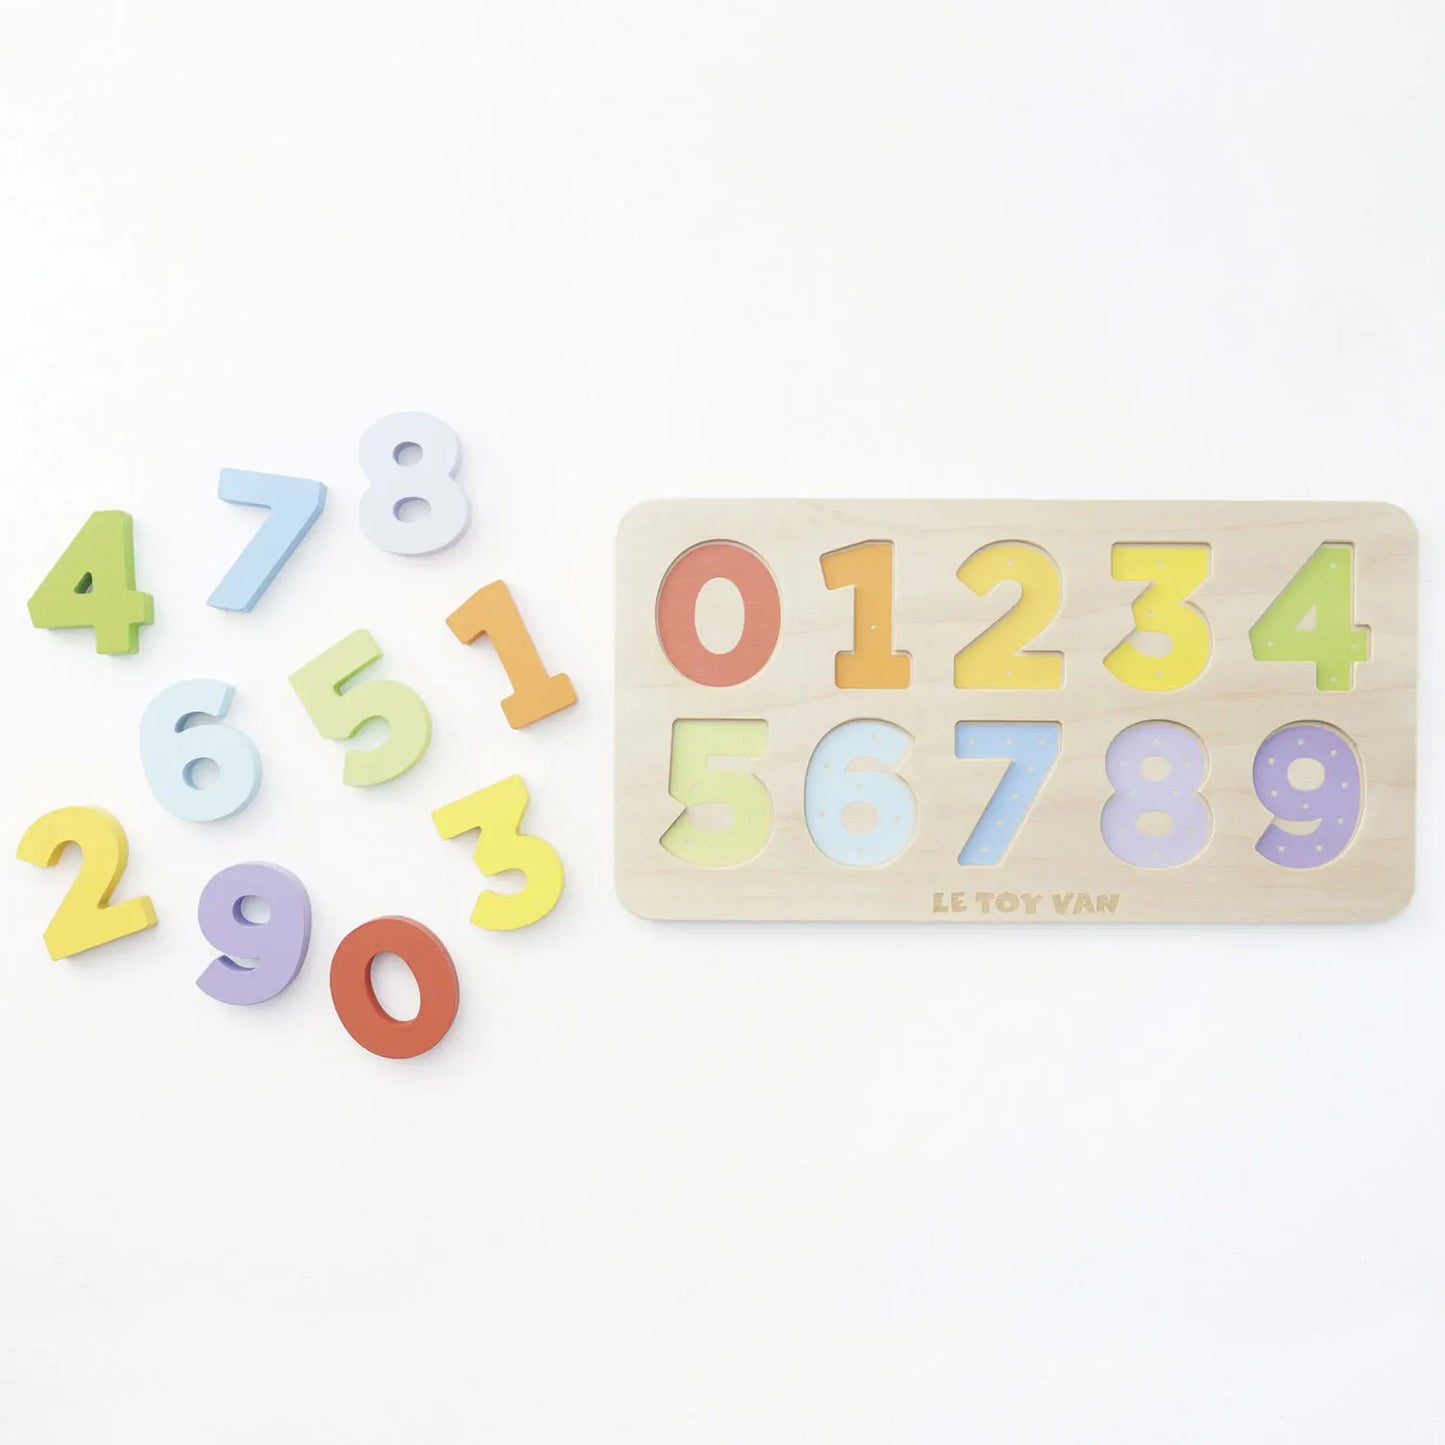 Houten getal telpuzzel van Le Toy Van met cijfers van 1 tot 9. Cijfers en bord.